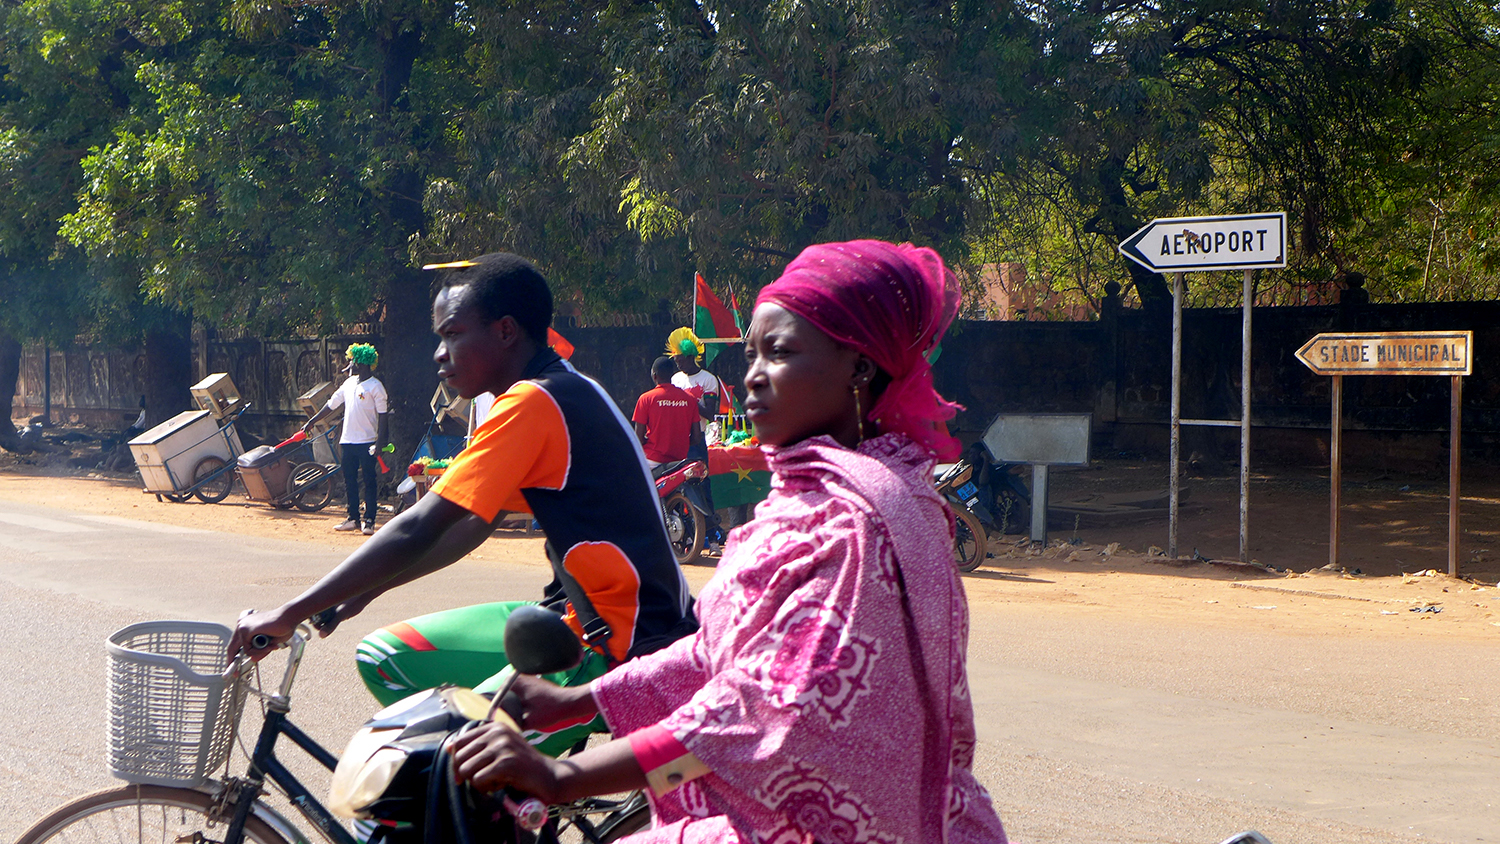 Wemtenga est près de l’aéroport de Ouagadougou. Voici le goudron qui mène vers l’aéroport © Globe Reporters